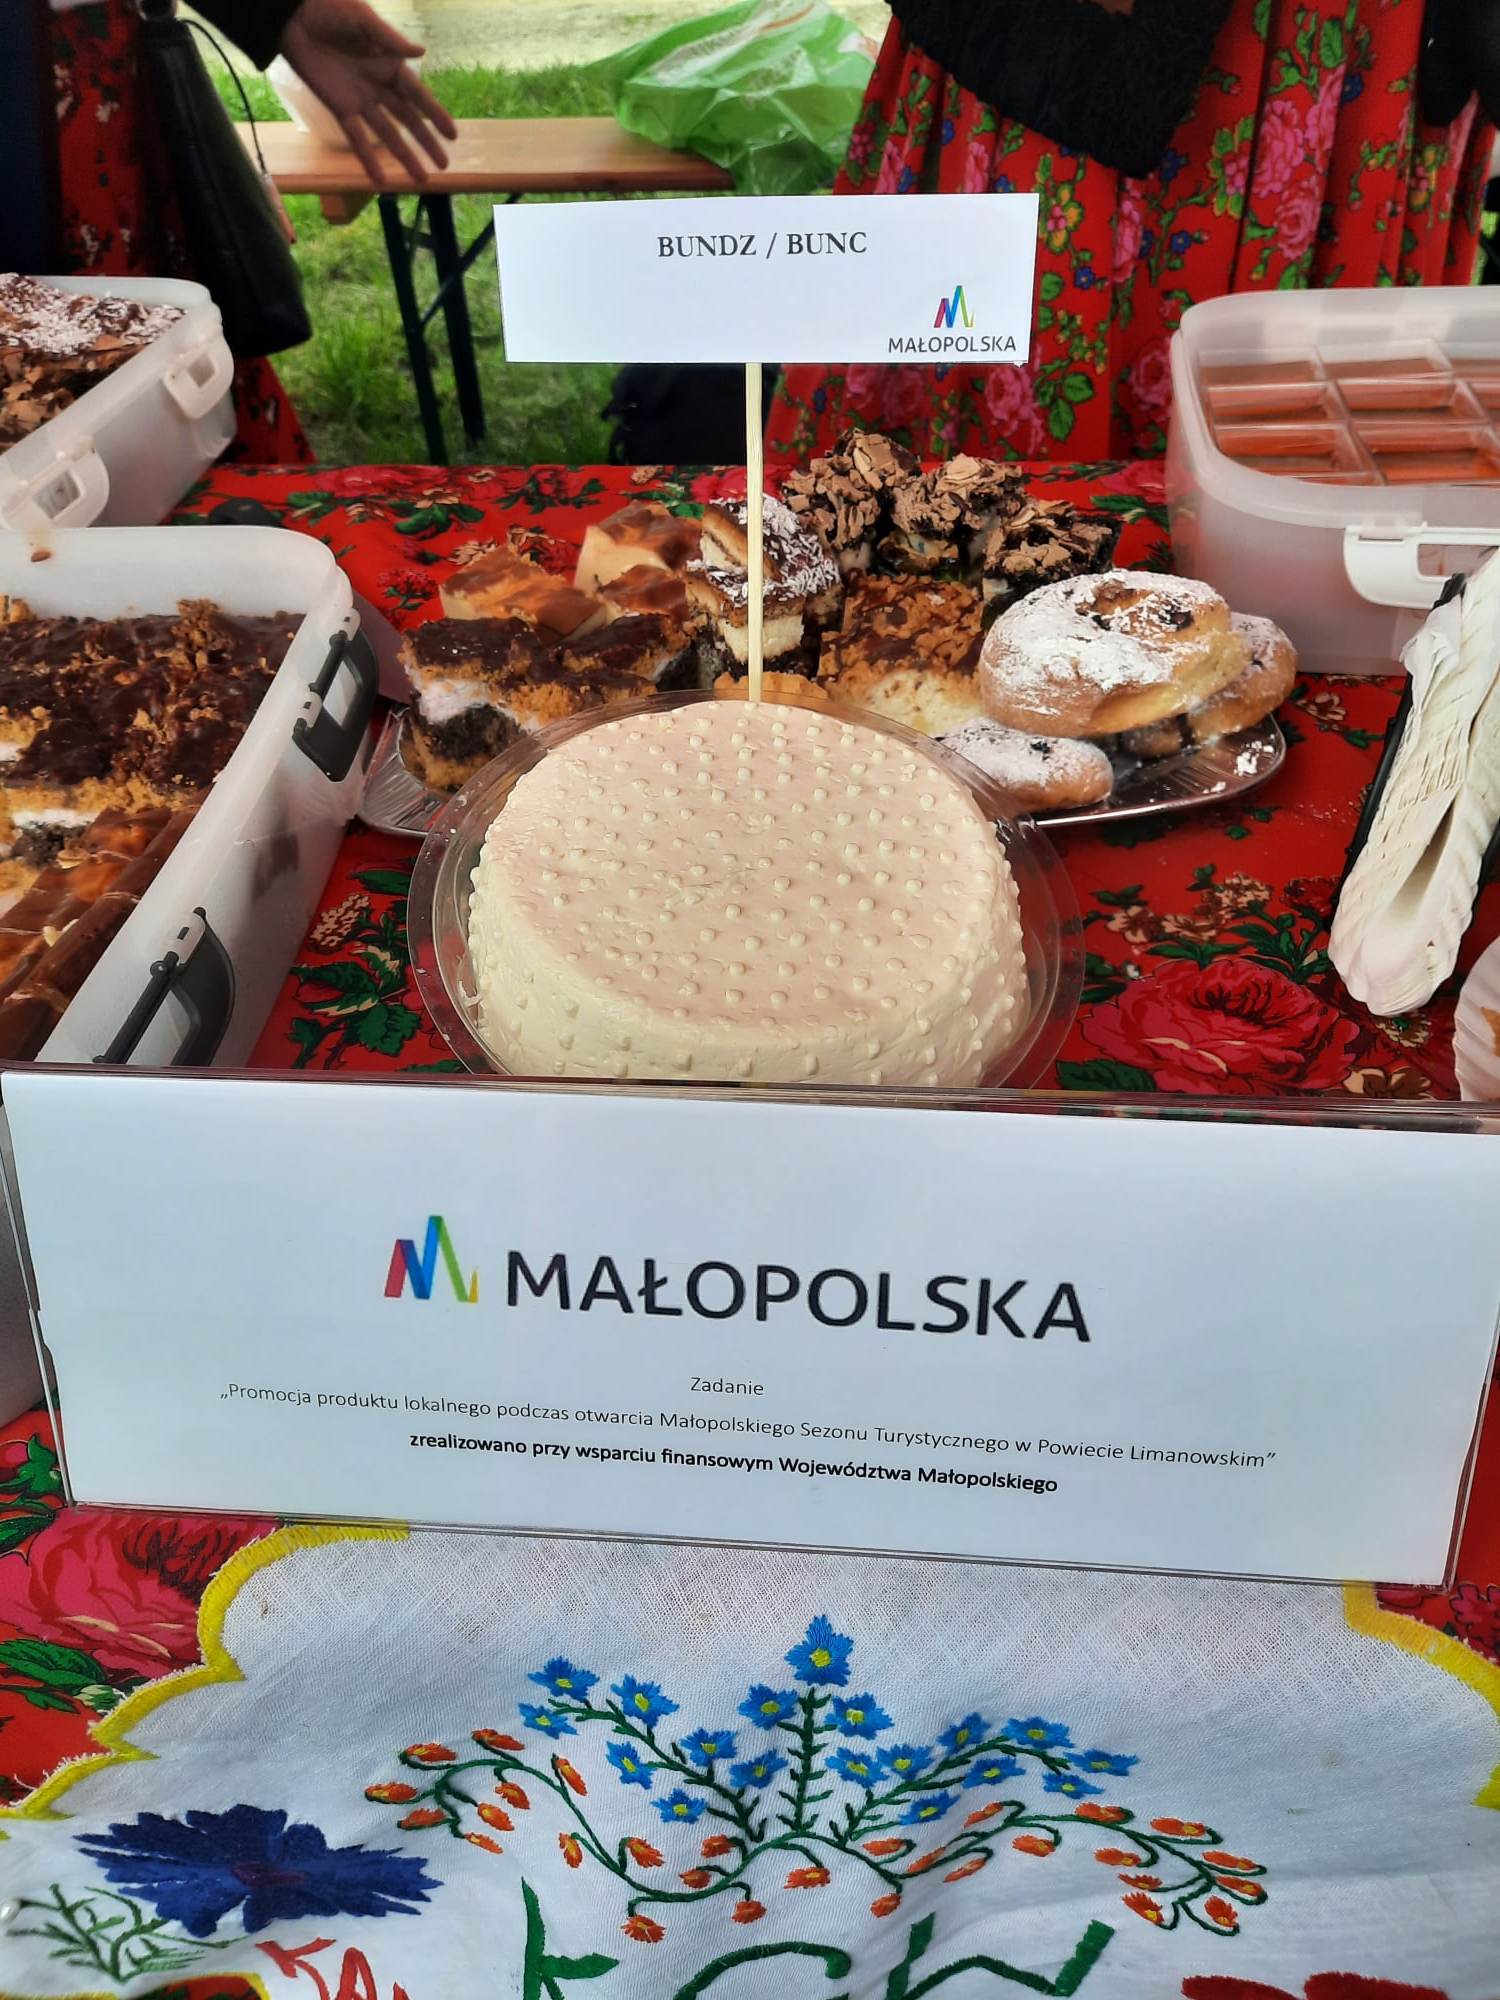 You are currently viewing Promocja produktu lokalnego podczas otwarcia Małopolskiego Sezonu Turystycznego w Powiecie Limanowskim